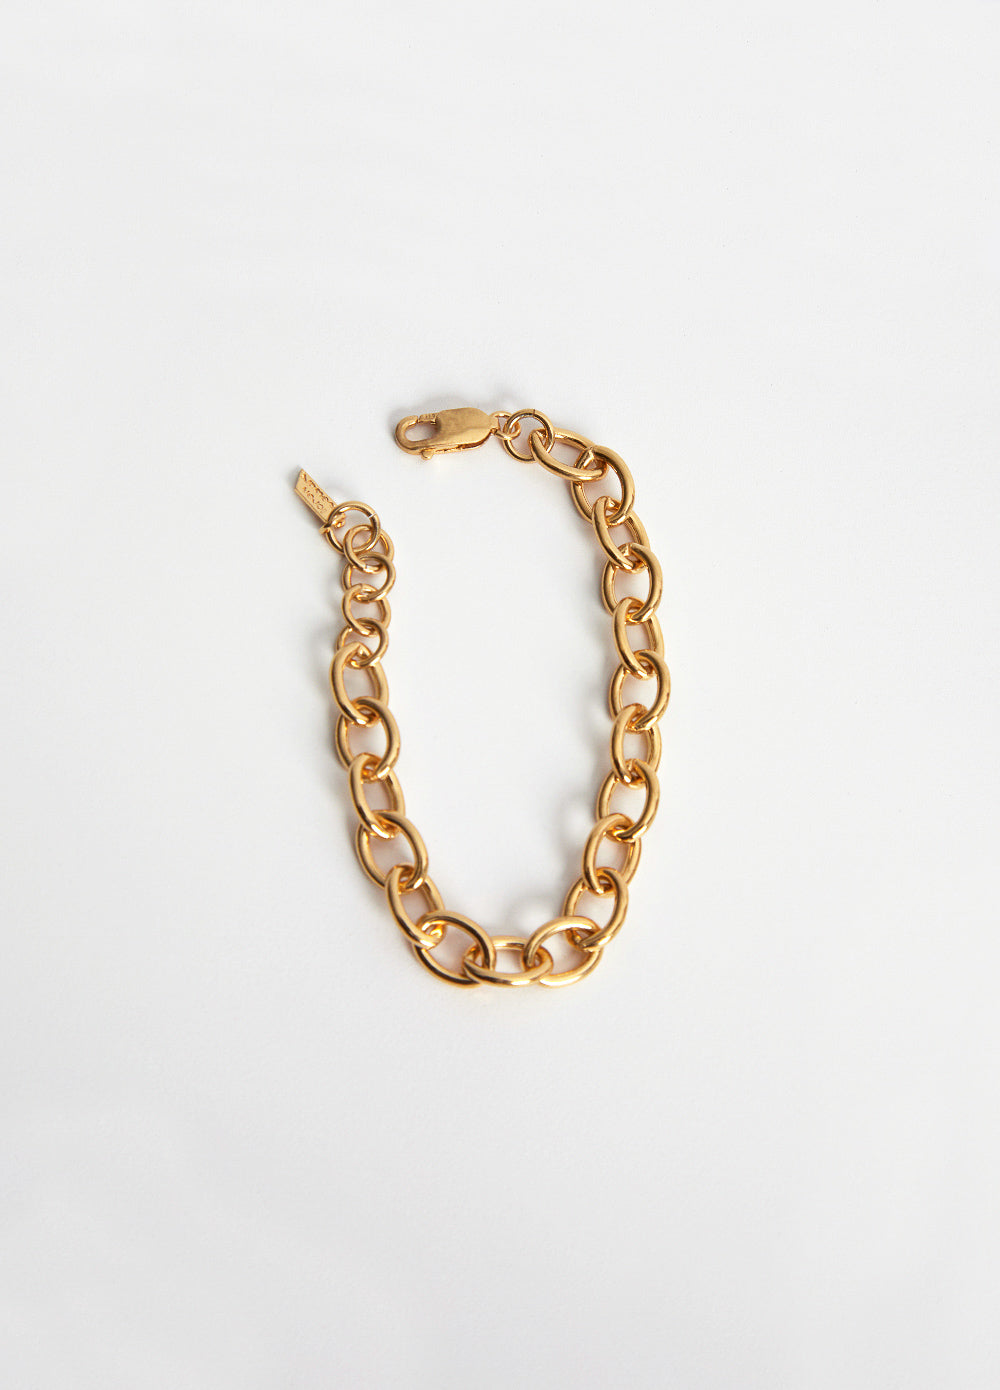 XXL Round Link Chain Bracelet